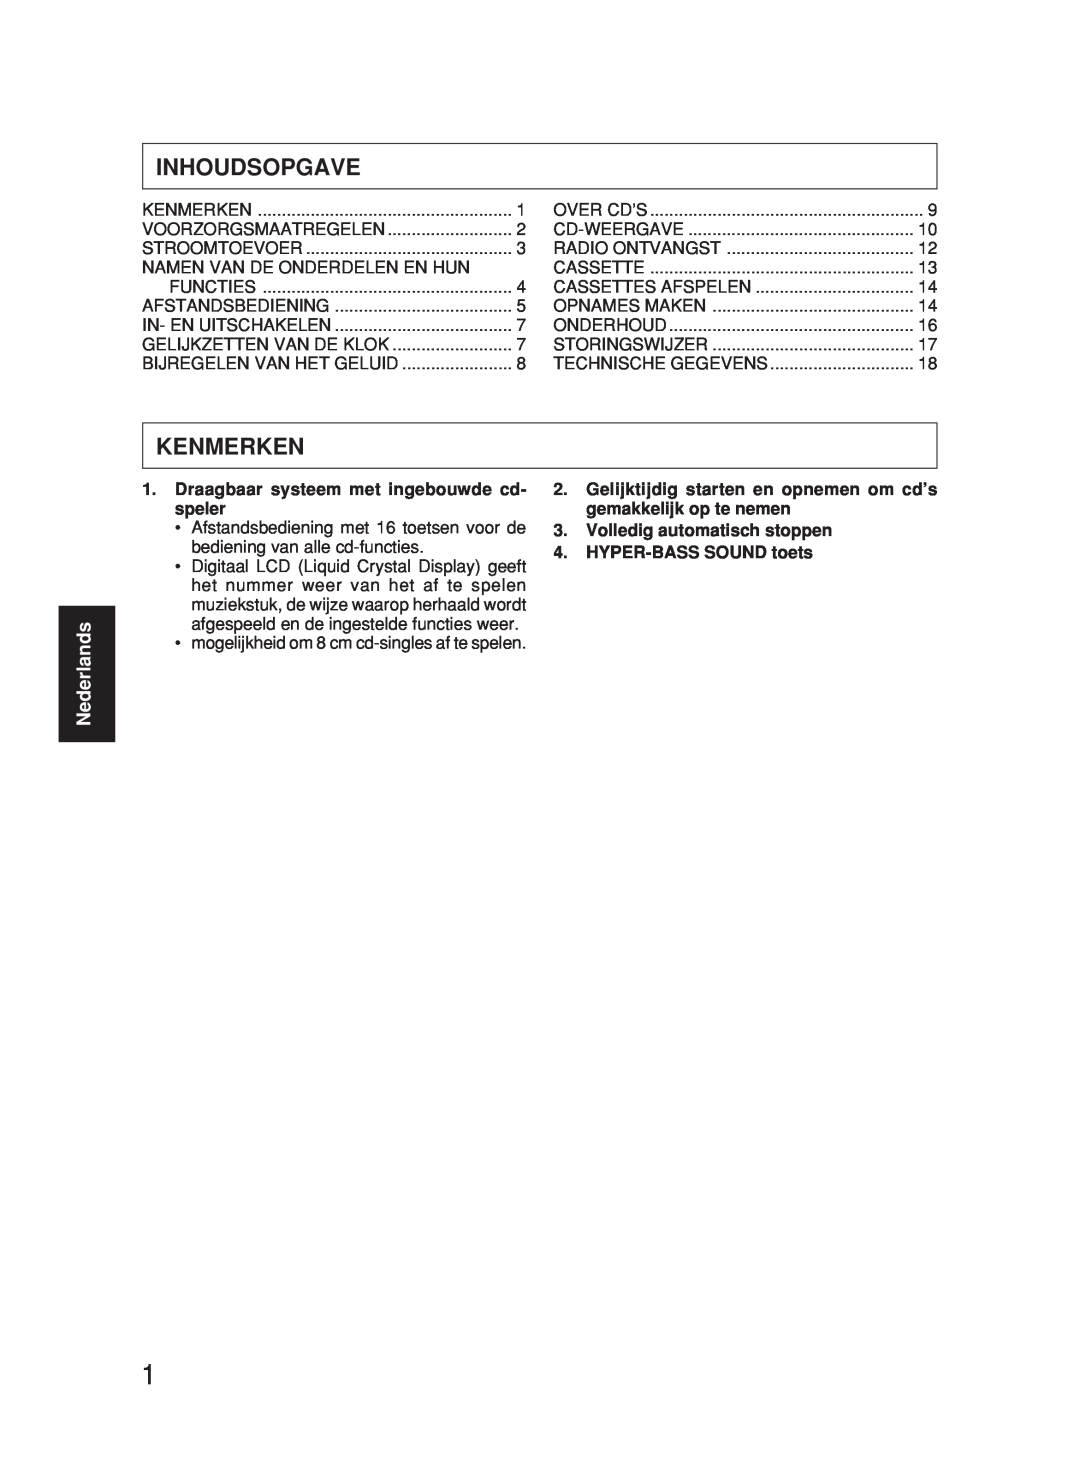 JVC RC-BX530SL manual Inhoudsopgave, Kenmerken, Nederlands 